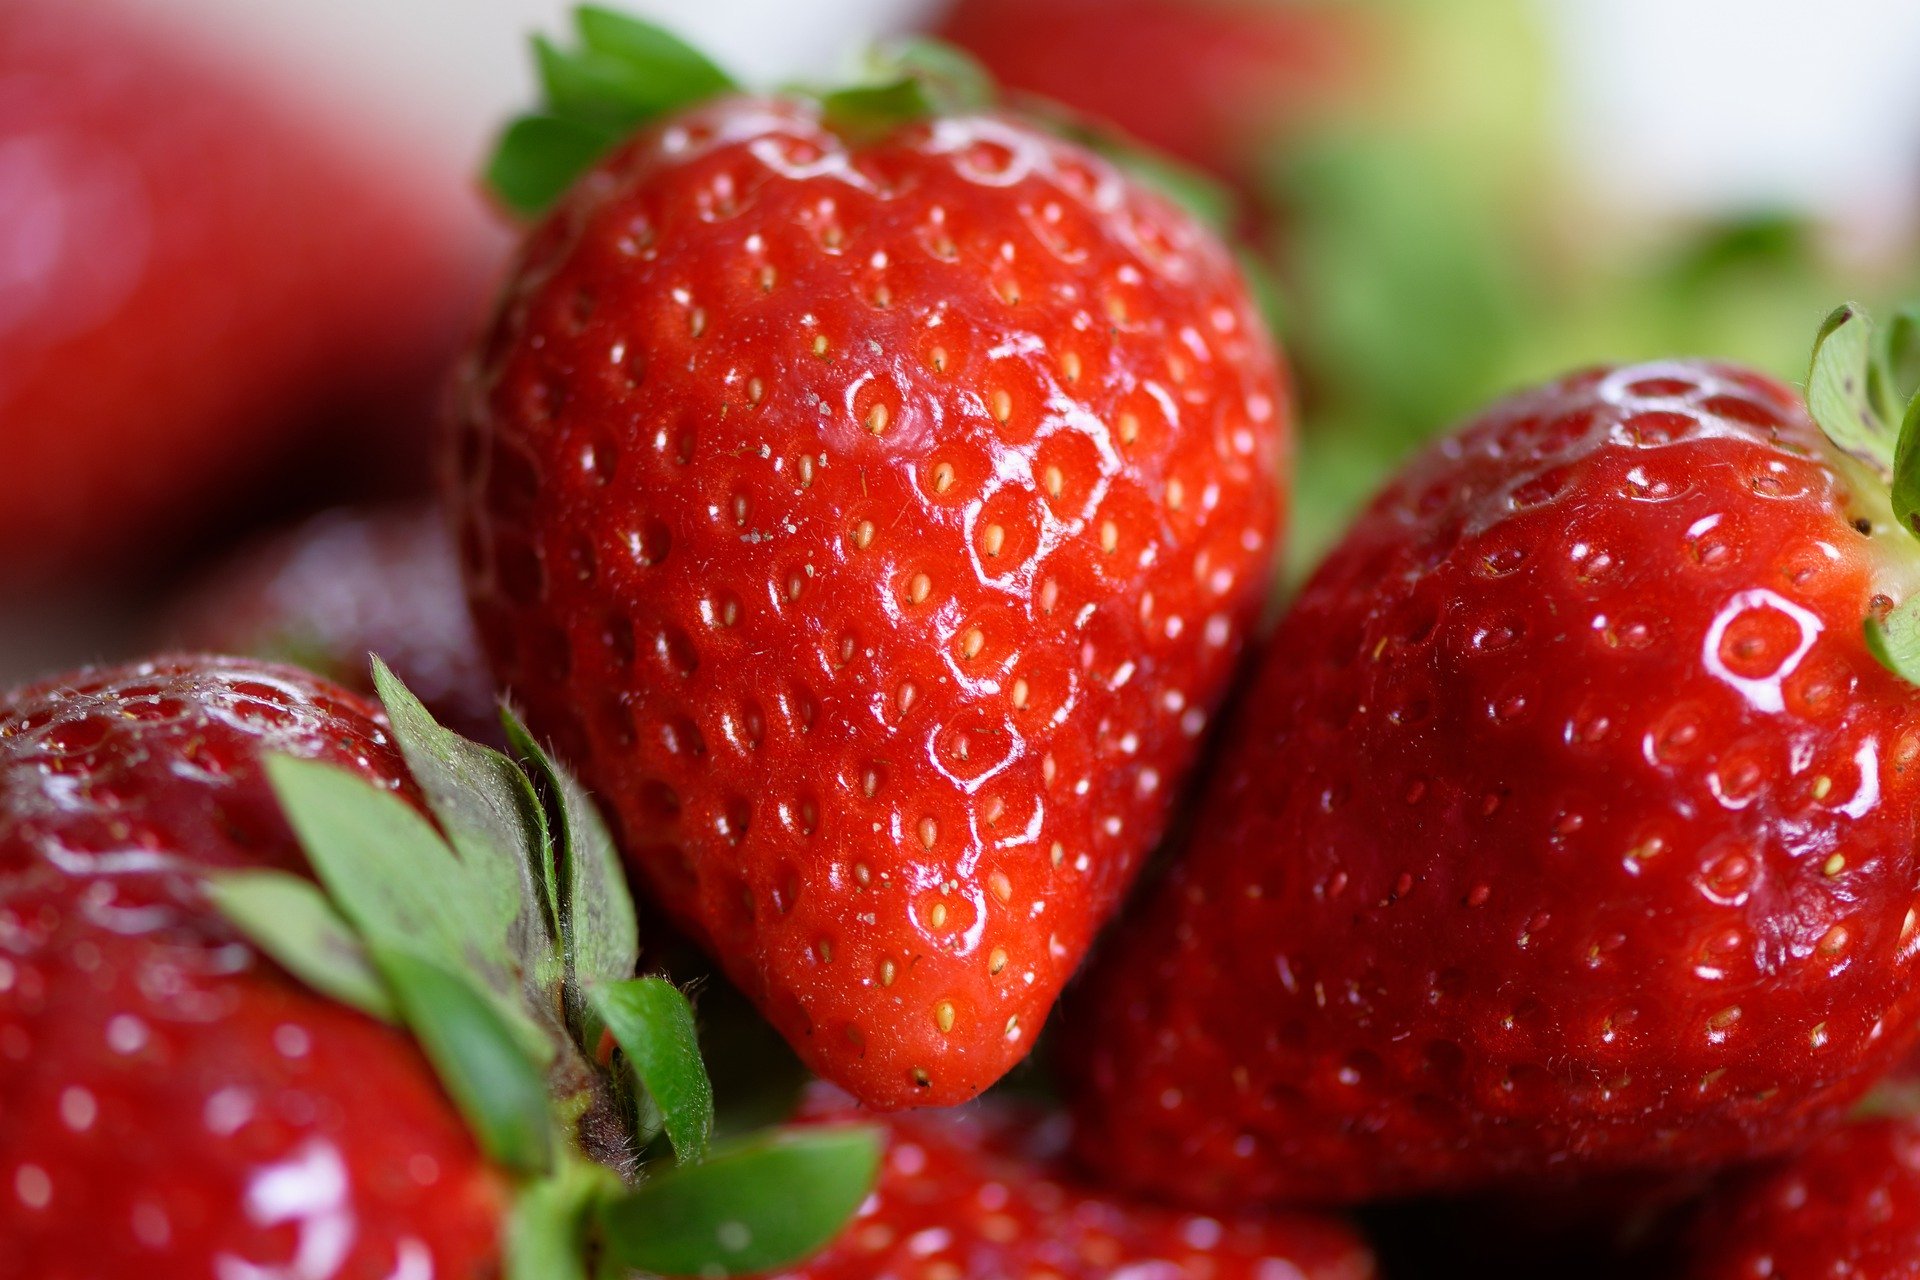 strawberries 4330211 1920.jpg?resize=412,232 - Tendances cheveux : Essayez-vous au "Strawberry blonde" pour rafraîchir votre look cette saison !